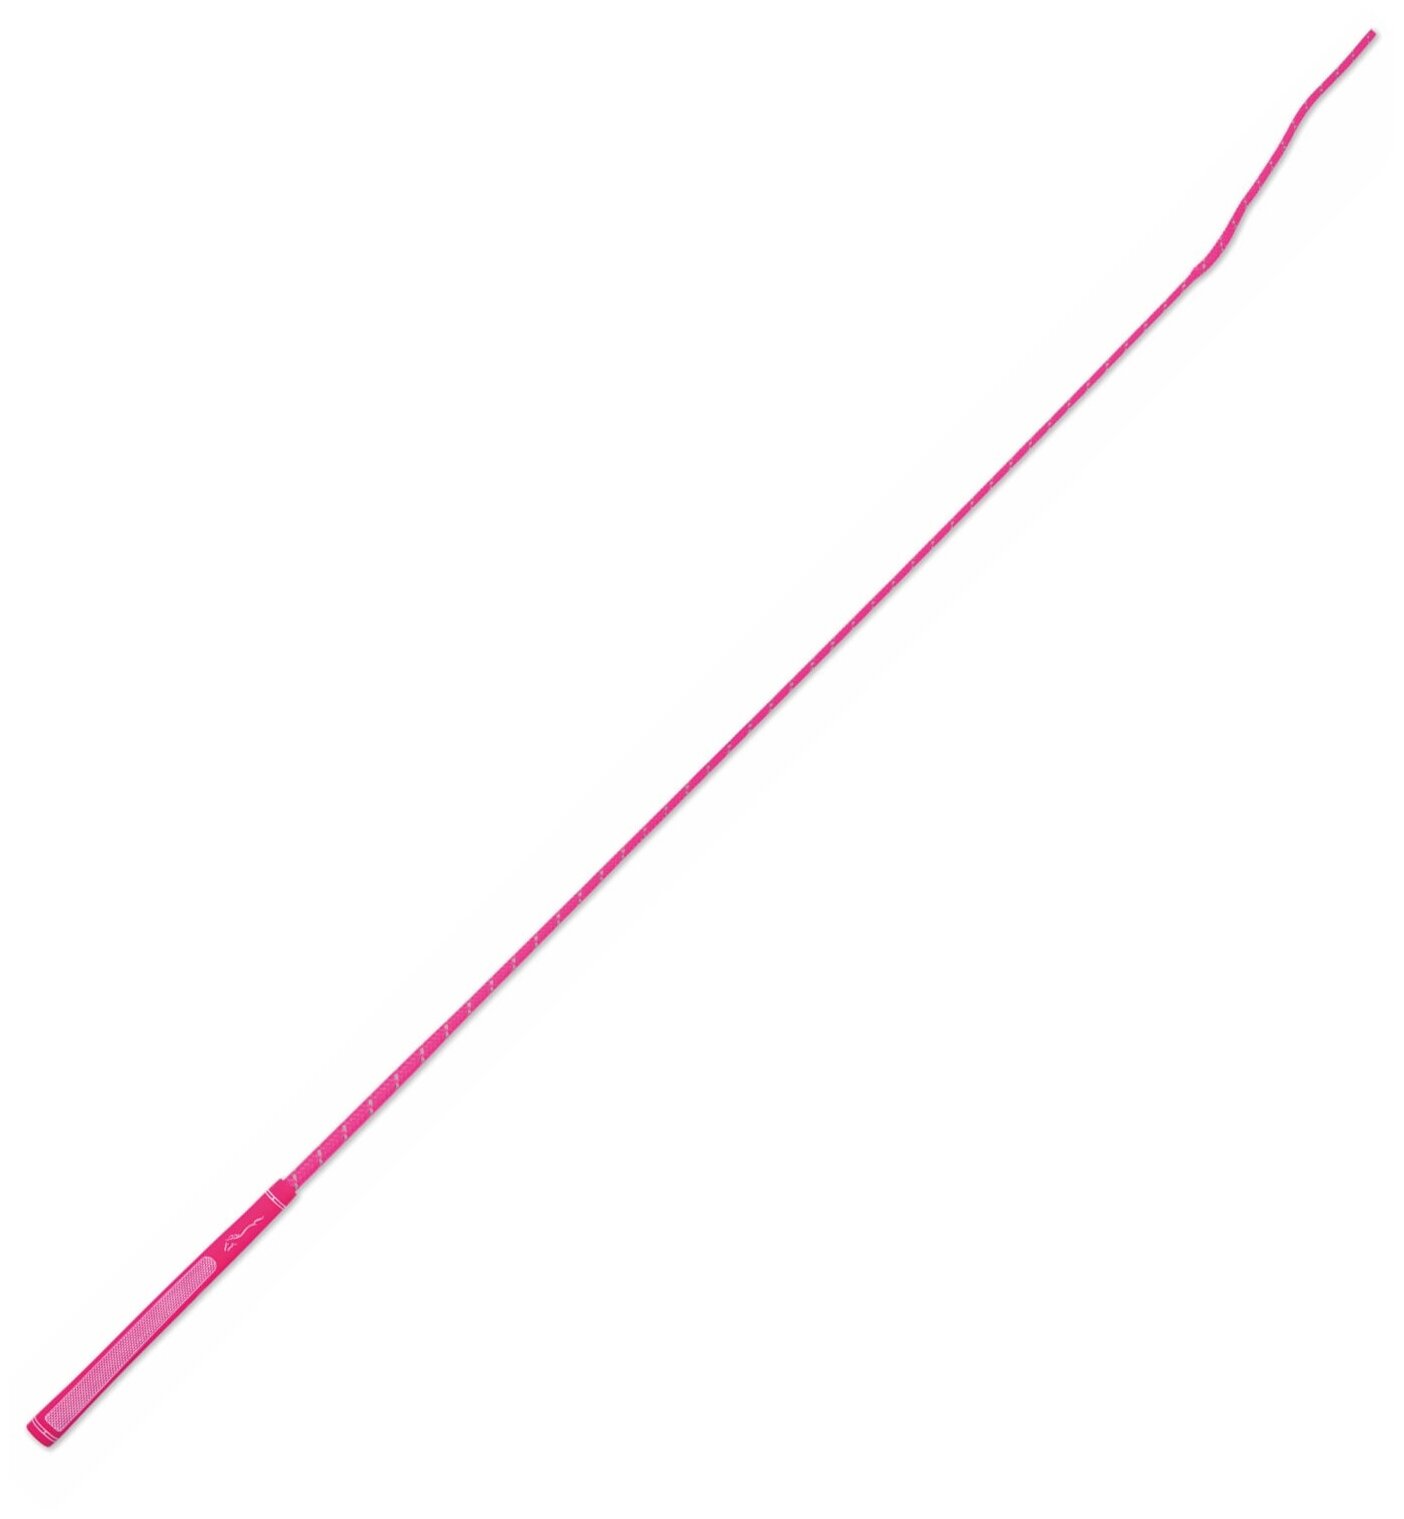 Хлыст для конного спорта светоотражающий SHIRES "Rainbow", 103 см, розовый (Великобритания)